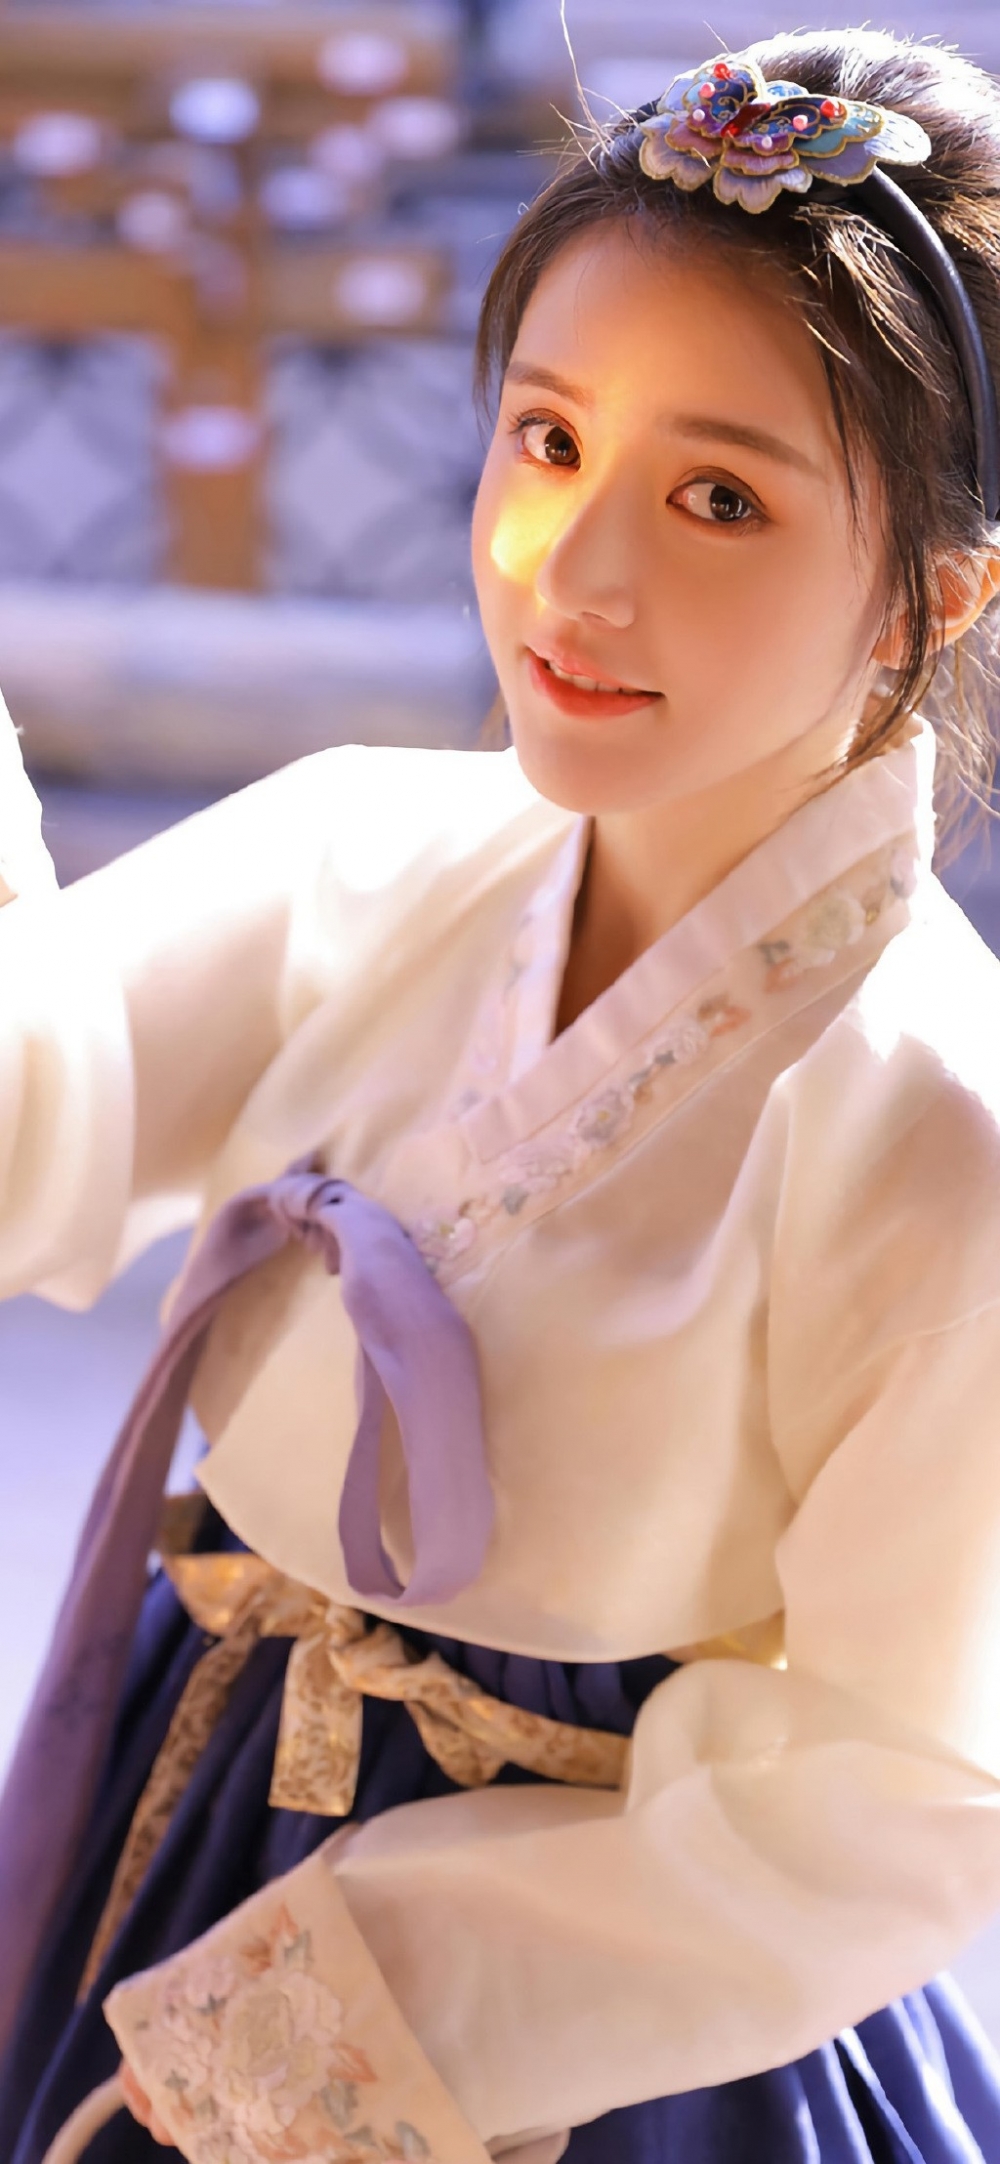 穿着汉服的日韩美女清丽动人气质脱俗唯美古风摄影